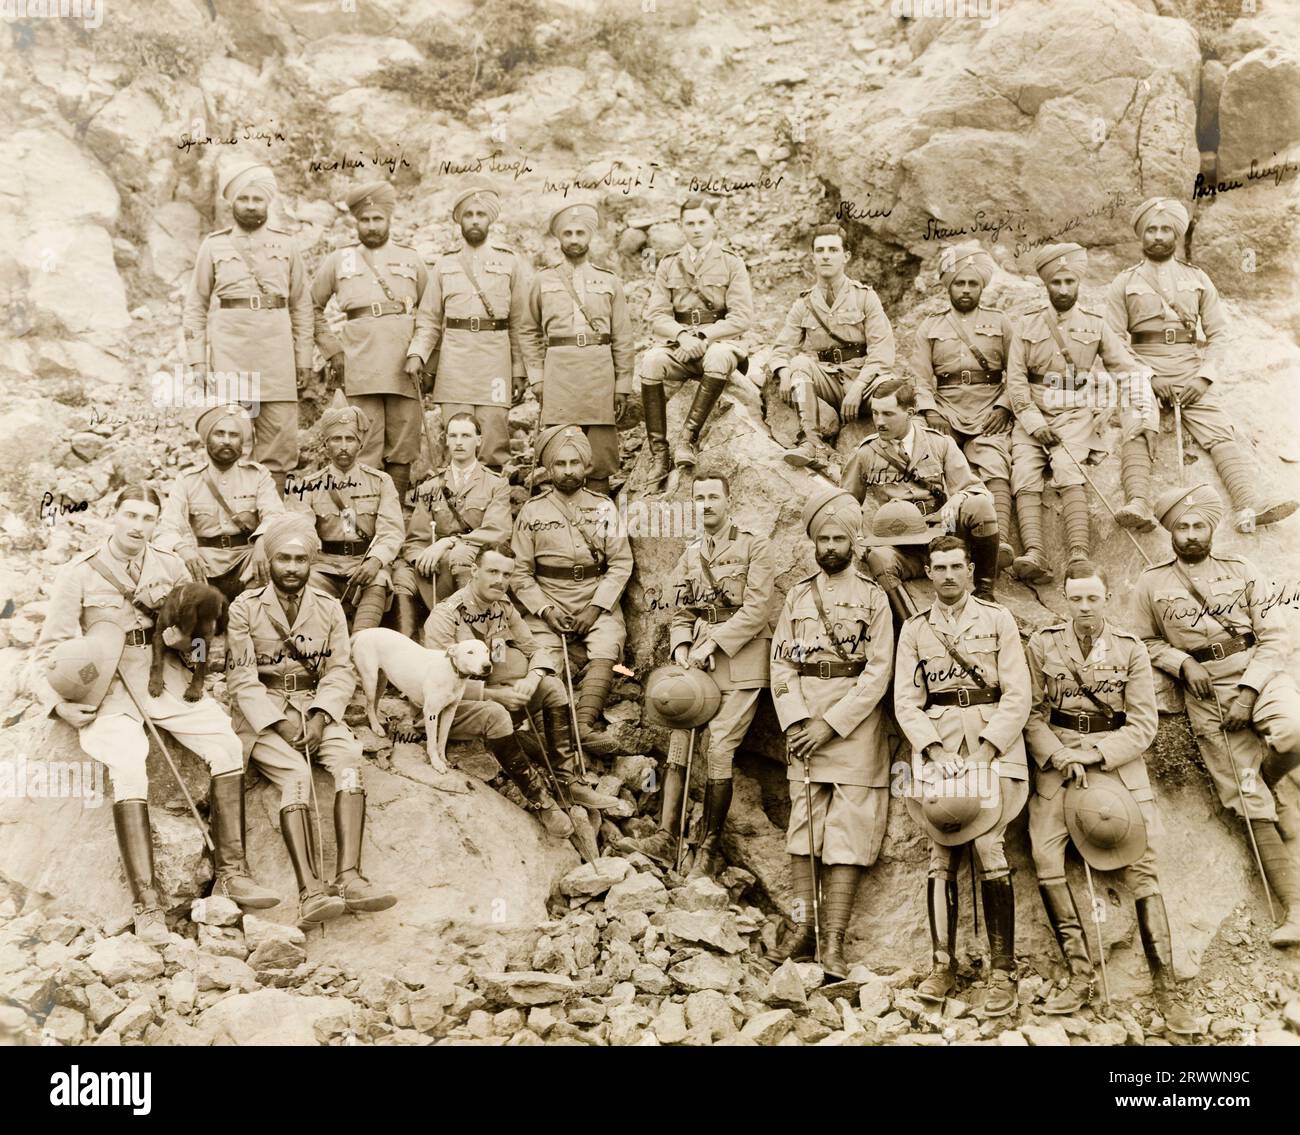 Das 14. Sikh-Regiment posiert für ein Gruppenporträt auf einem felsigen Berghang, gekleidet in Militäruniform und ausgestattet mit Wanderstöcken. Das Bild ist undatiert, stammt aber möglicherweise aus dem Dienst in Mesopotamien am Ende des 1. Weltkriegs oder Anfang der 1920er Jahre Stockfoto